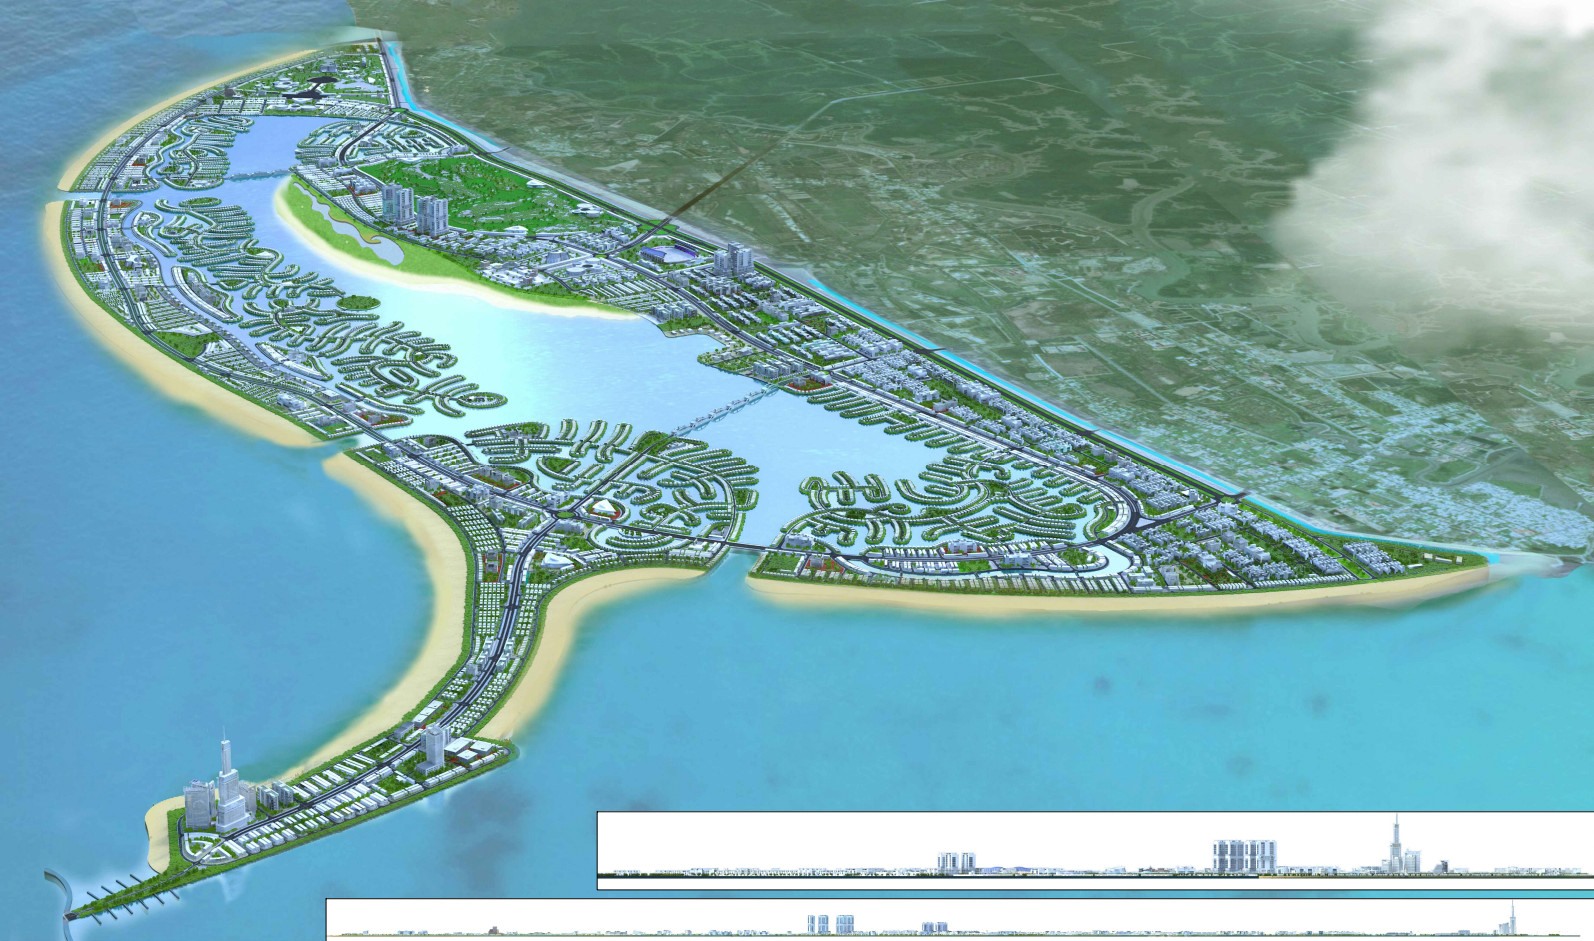 Khu đô thị du lịch biển Cần Giờ rộng 2.870 ha, sẽ được xây dựng khu đô thị này ở xã Long Hòa và thị trấn Cần Thạnh. Siêu đô thị lấn biển này có có 5 phân khu chức năng A, B, C, D, E, dân số hơn 228.000 người.